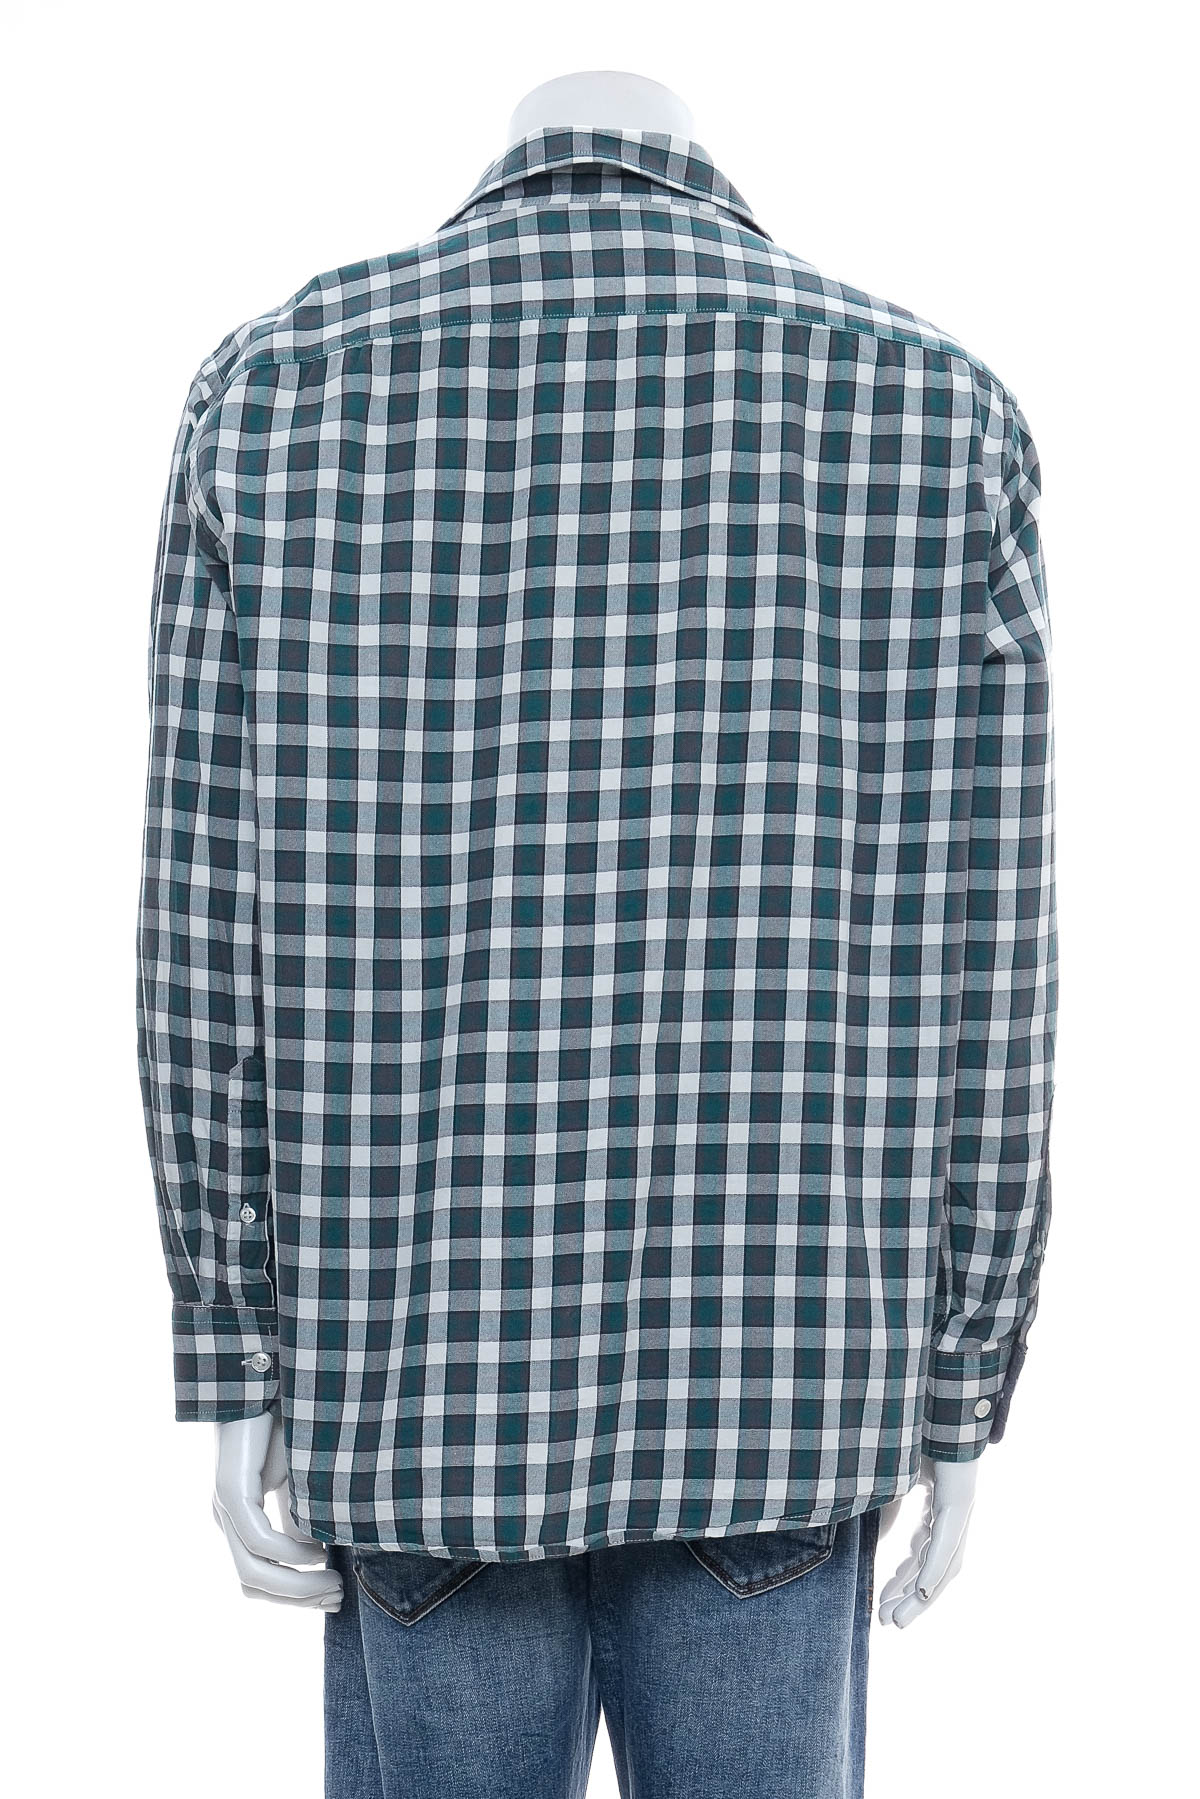 Ανδρικό πουκάμισο - Bexleys - 1